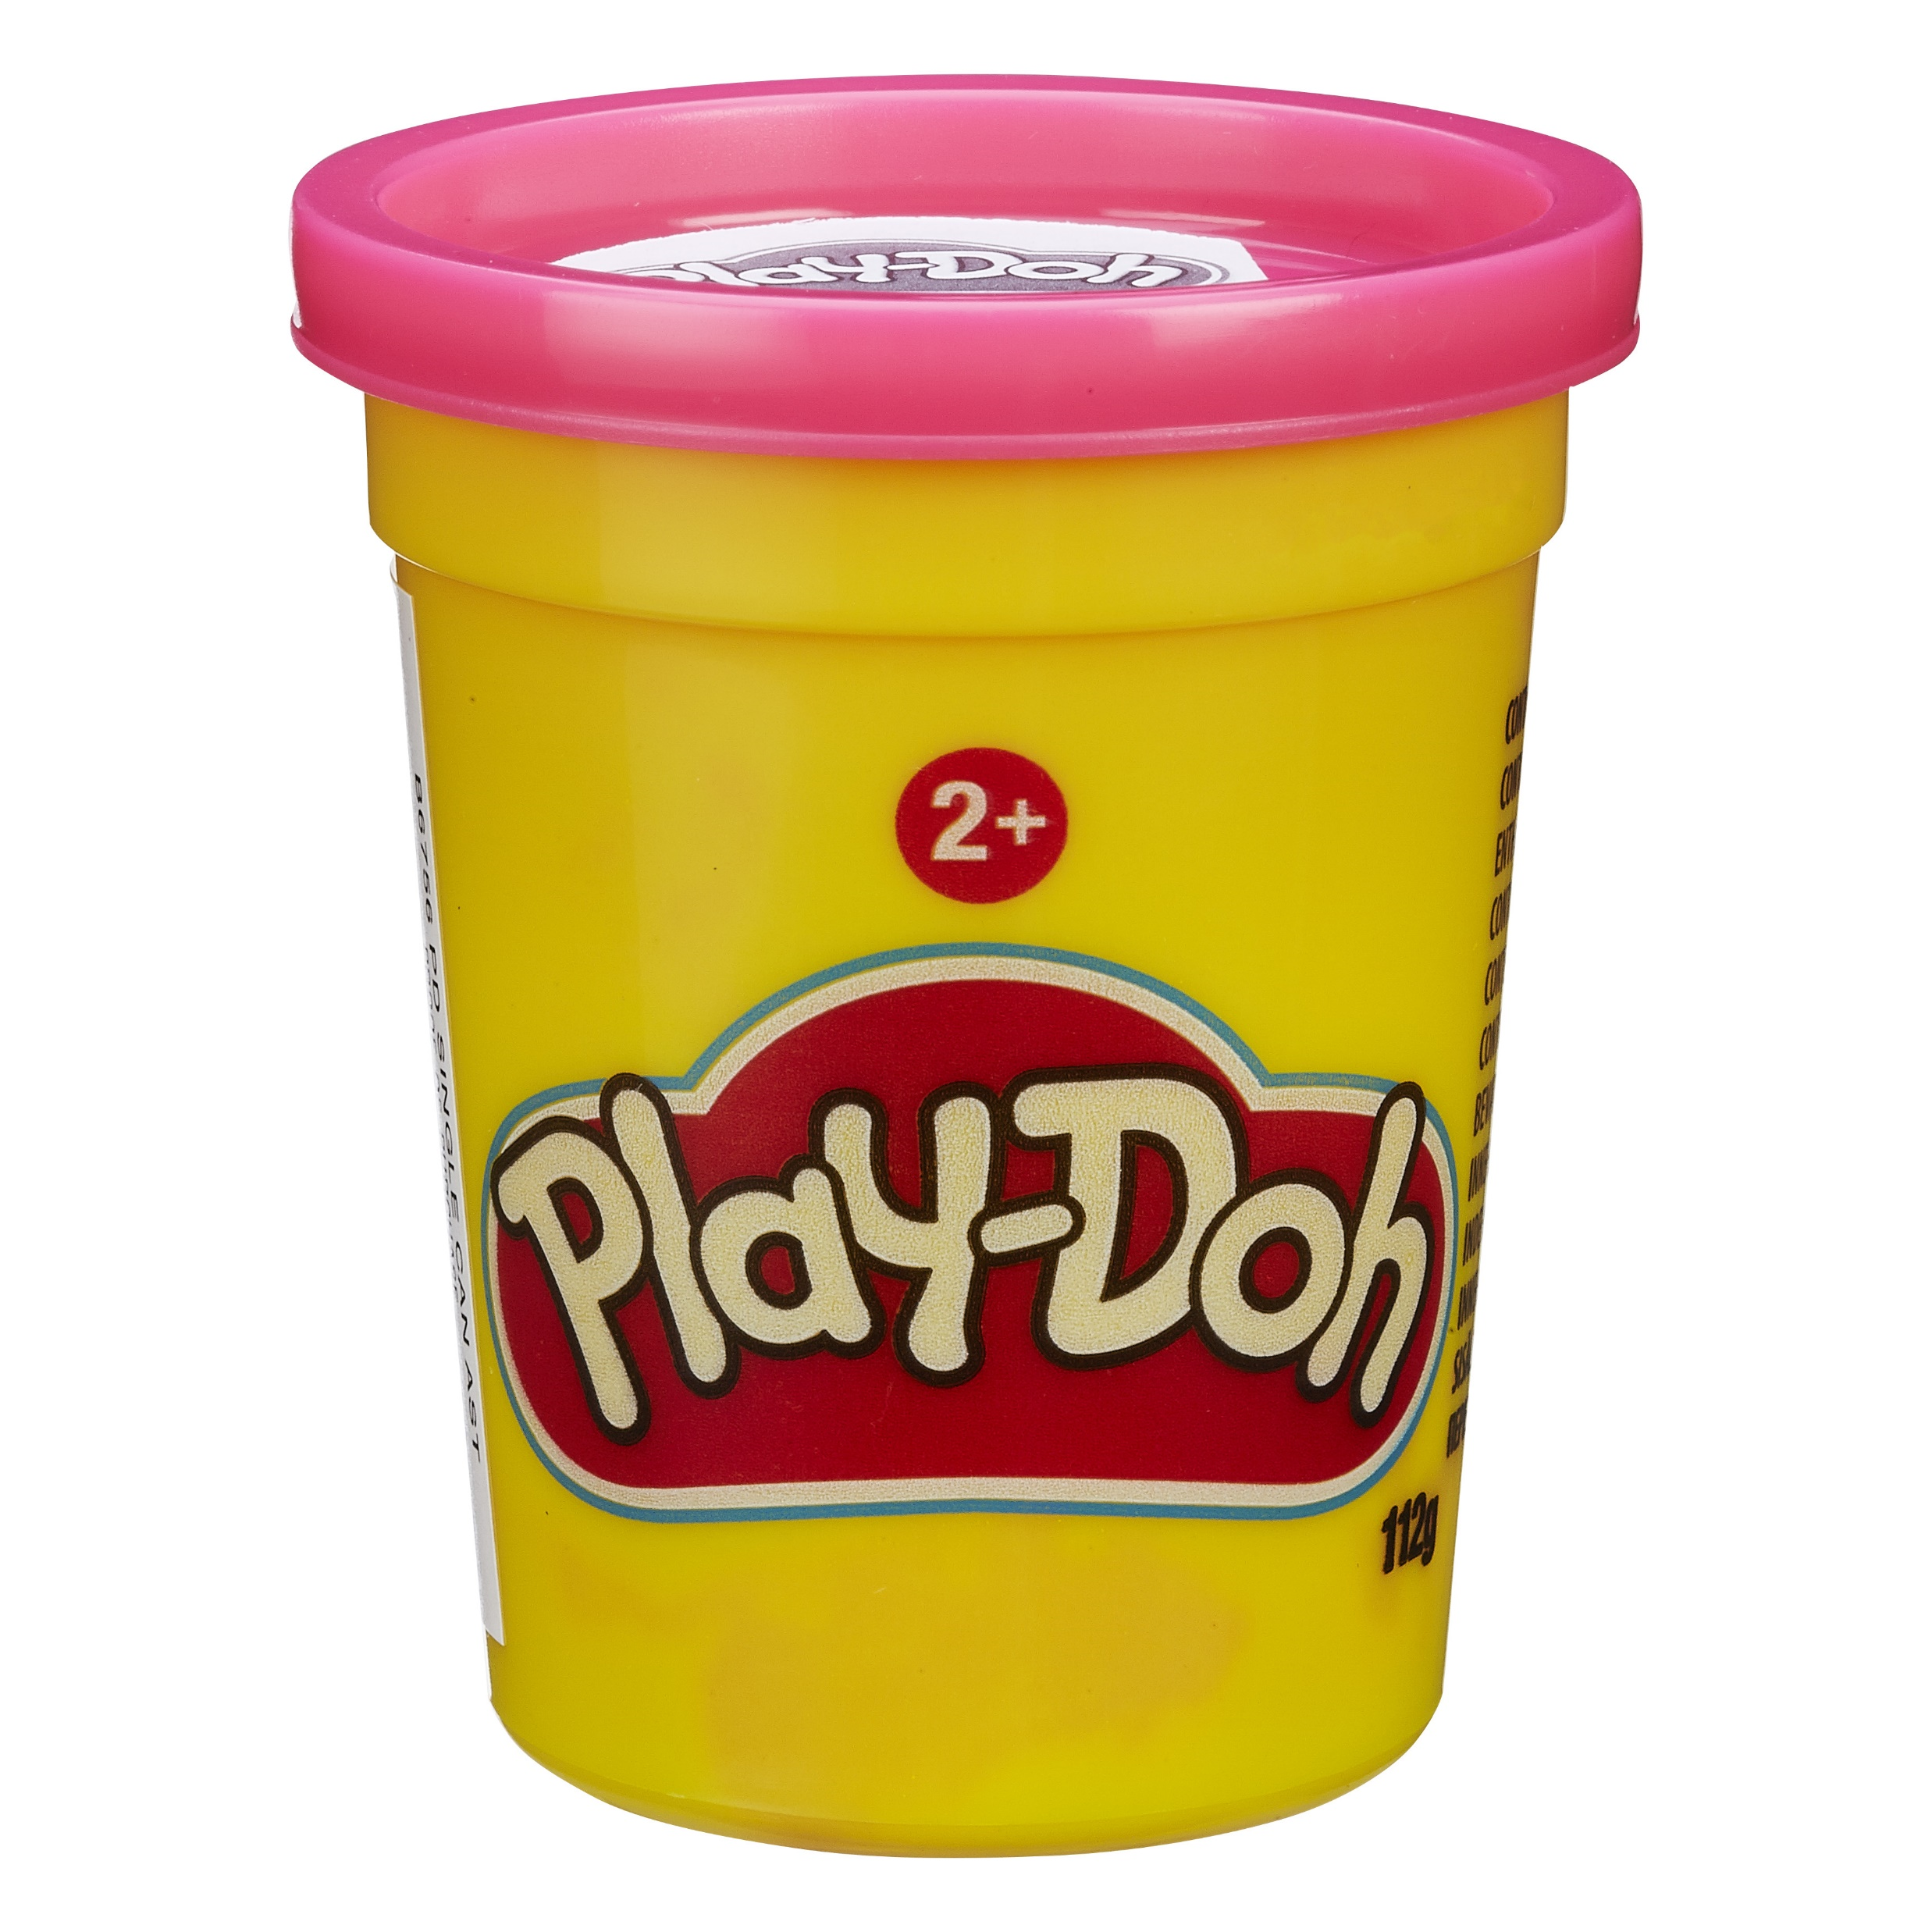 Play-doh - vasetto singolo, vasetto di pasta da modellare atossica - PLAY-DOH